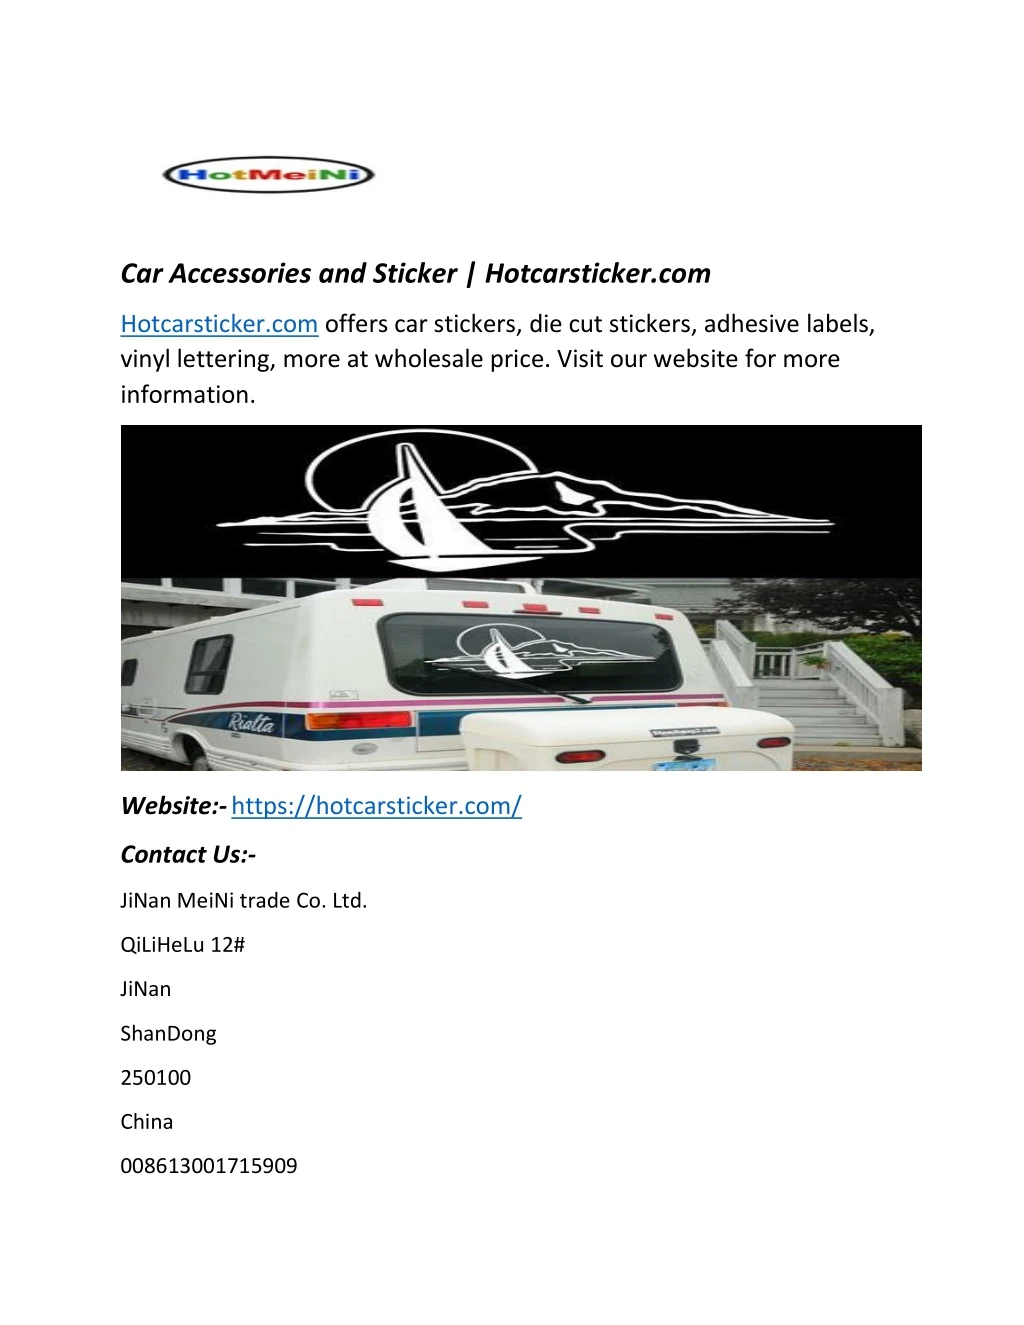 car accessories and sticker hotcarsticker com